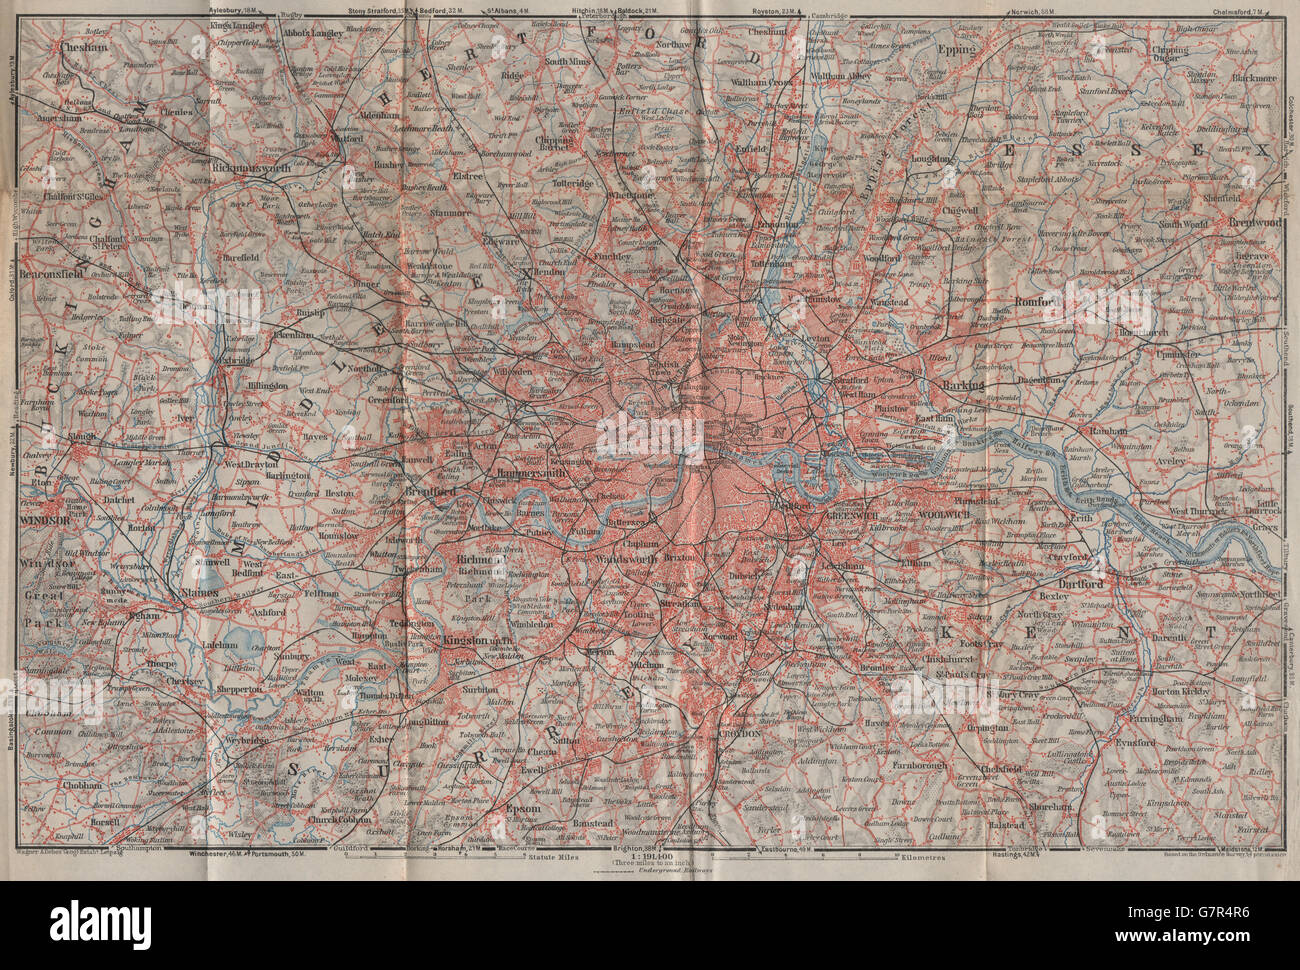 Londres y condados mostrando los ferrocarriles. BAEDEKER, 1930 vintage mapa Foto de stock